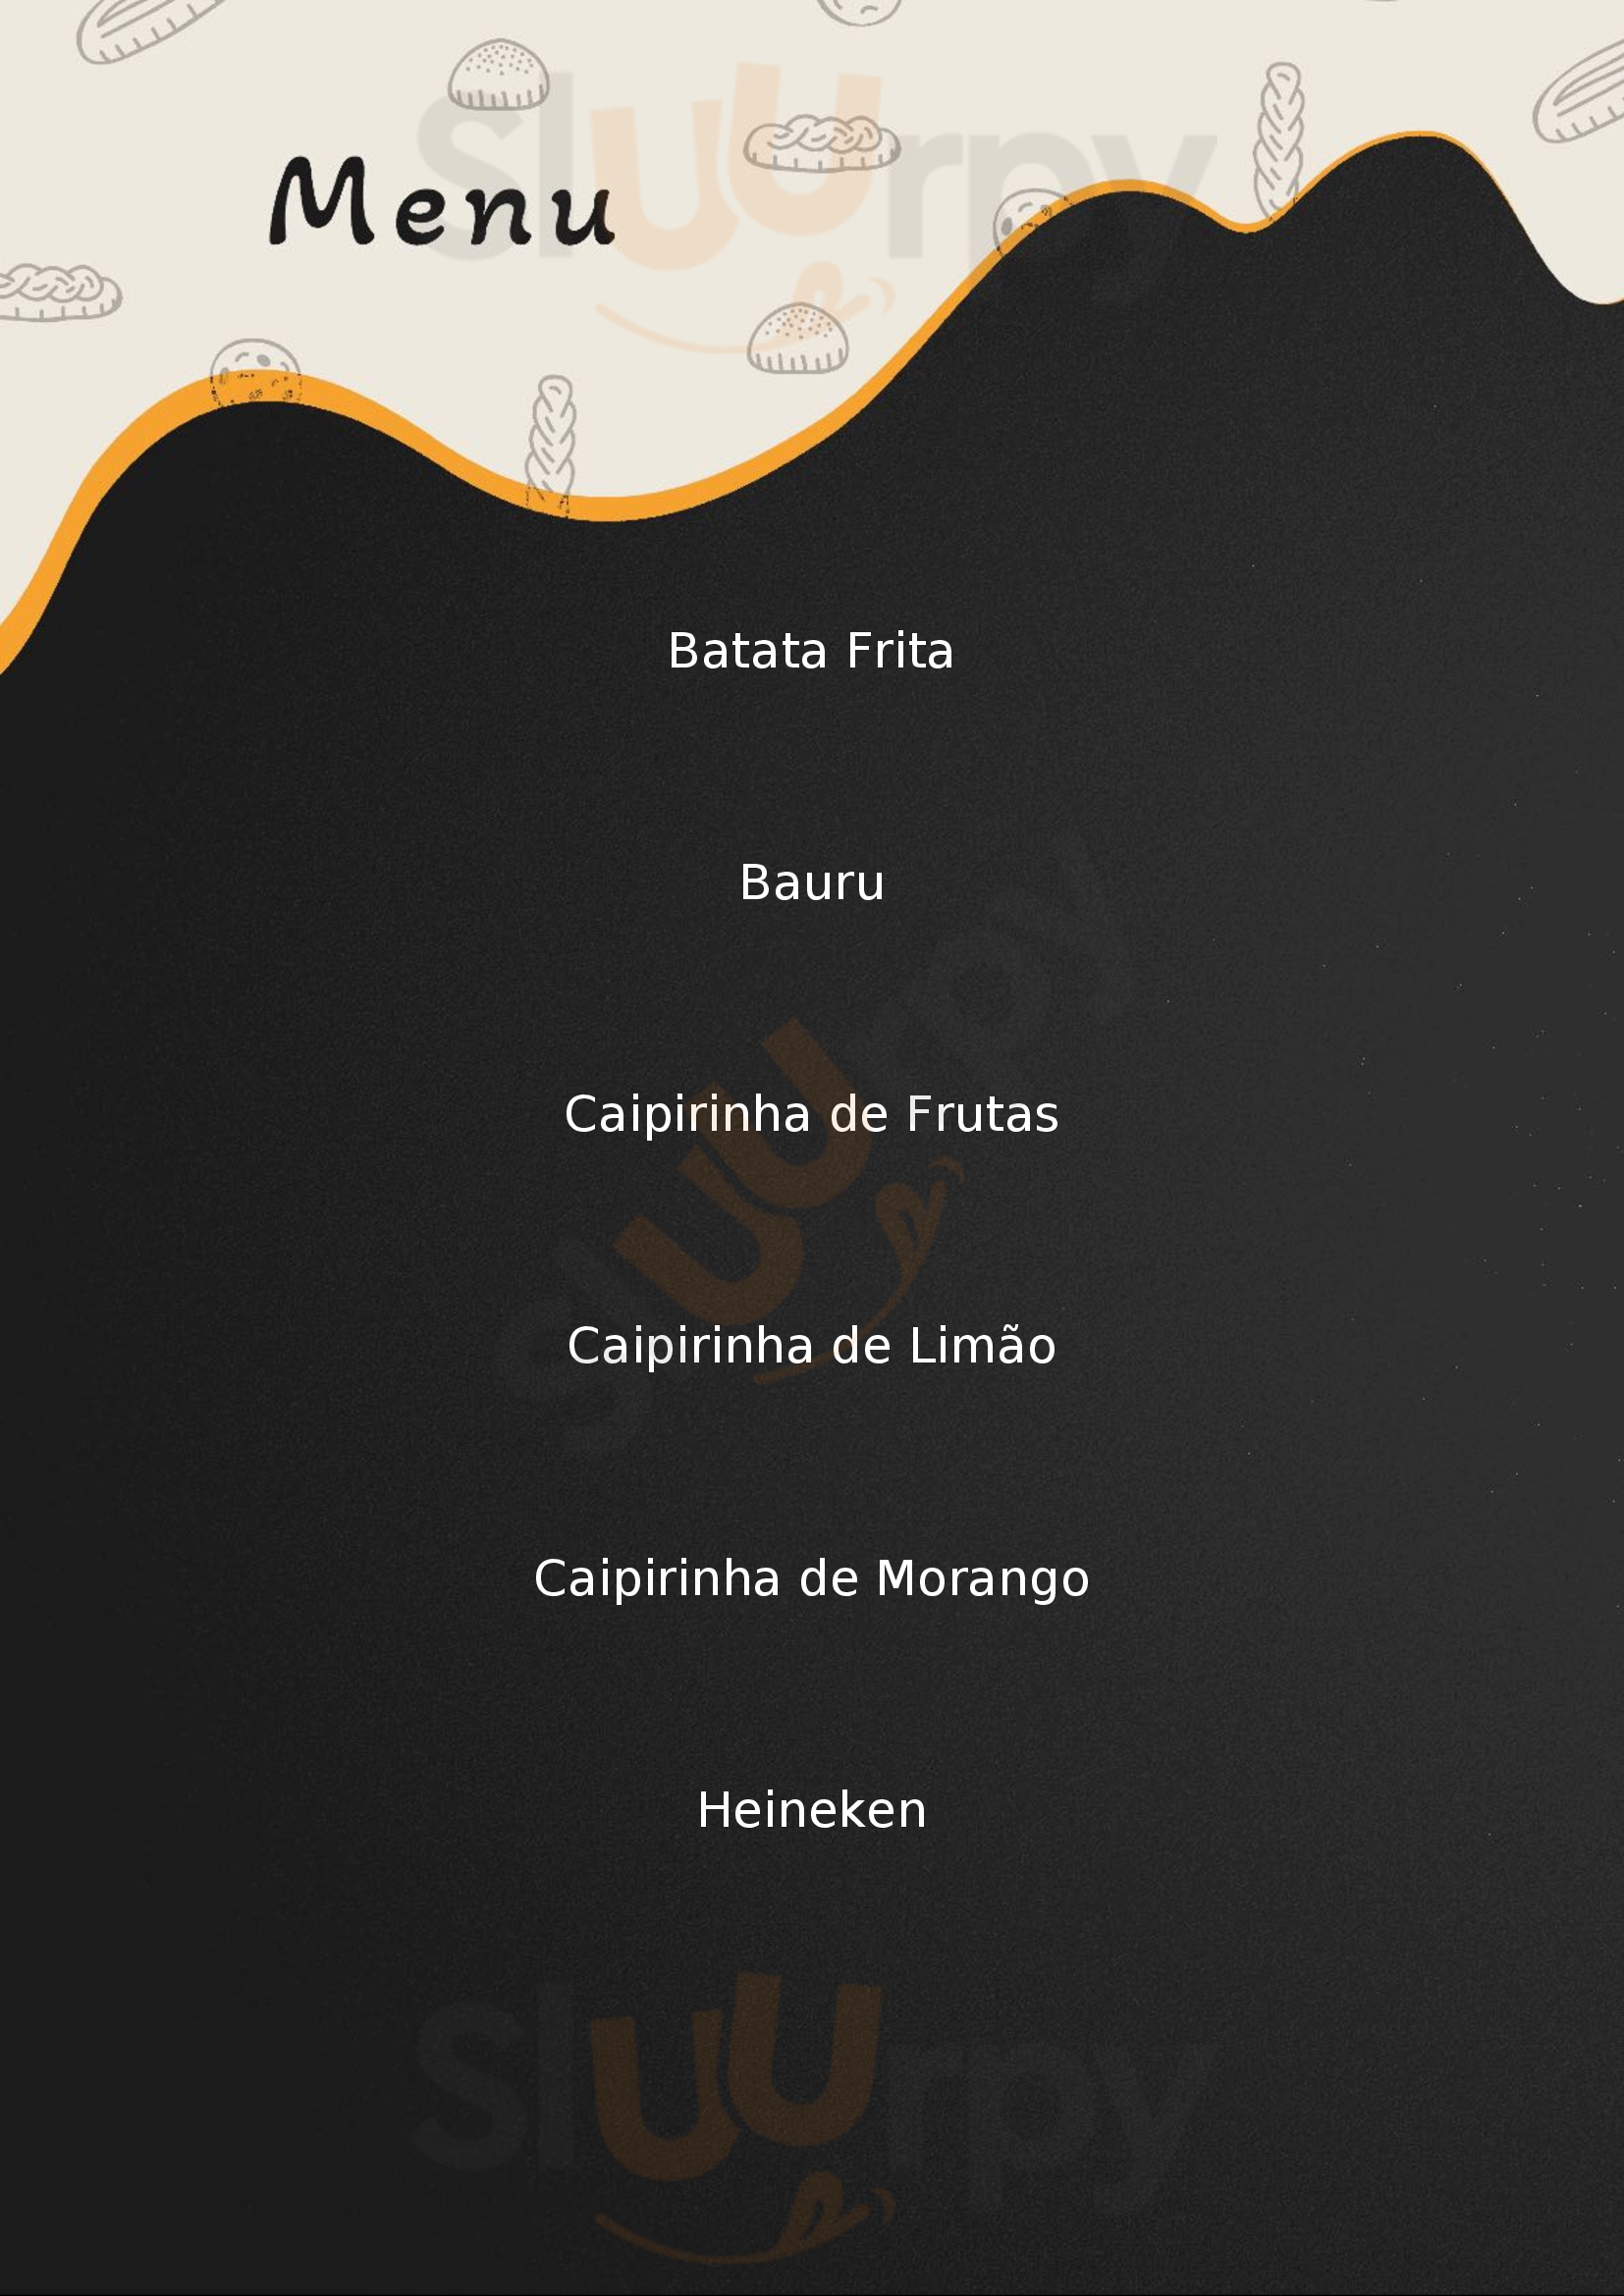 Reges Burguer Caxias Do Sul Menu - 1